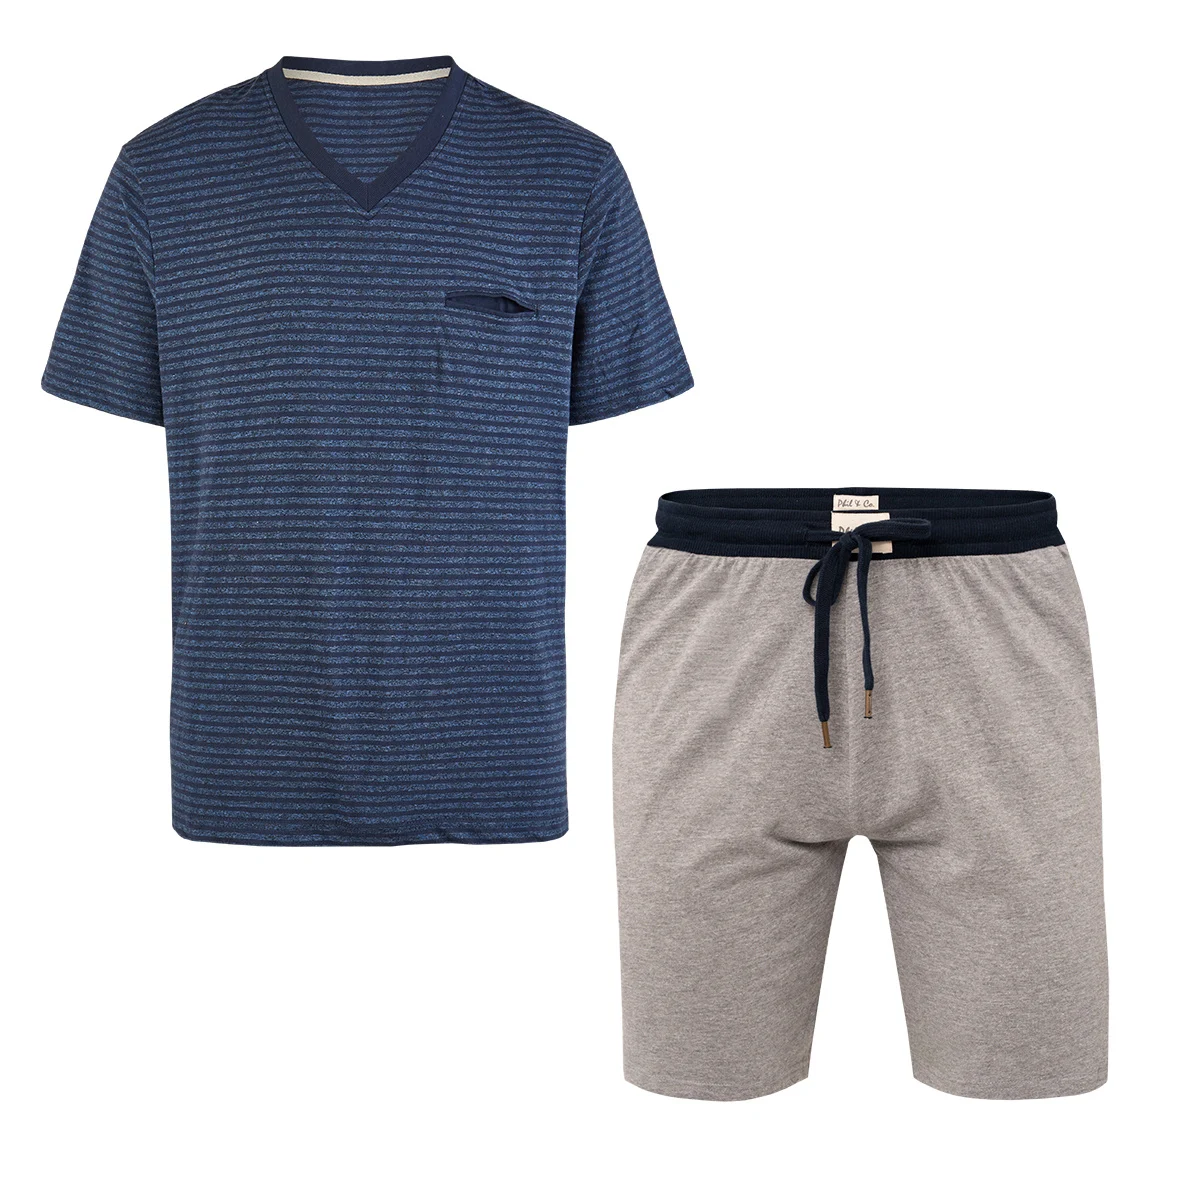 Afbeelding van Phil & Co Essential shortama heren korte pyjama katoen blauw / grijs